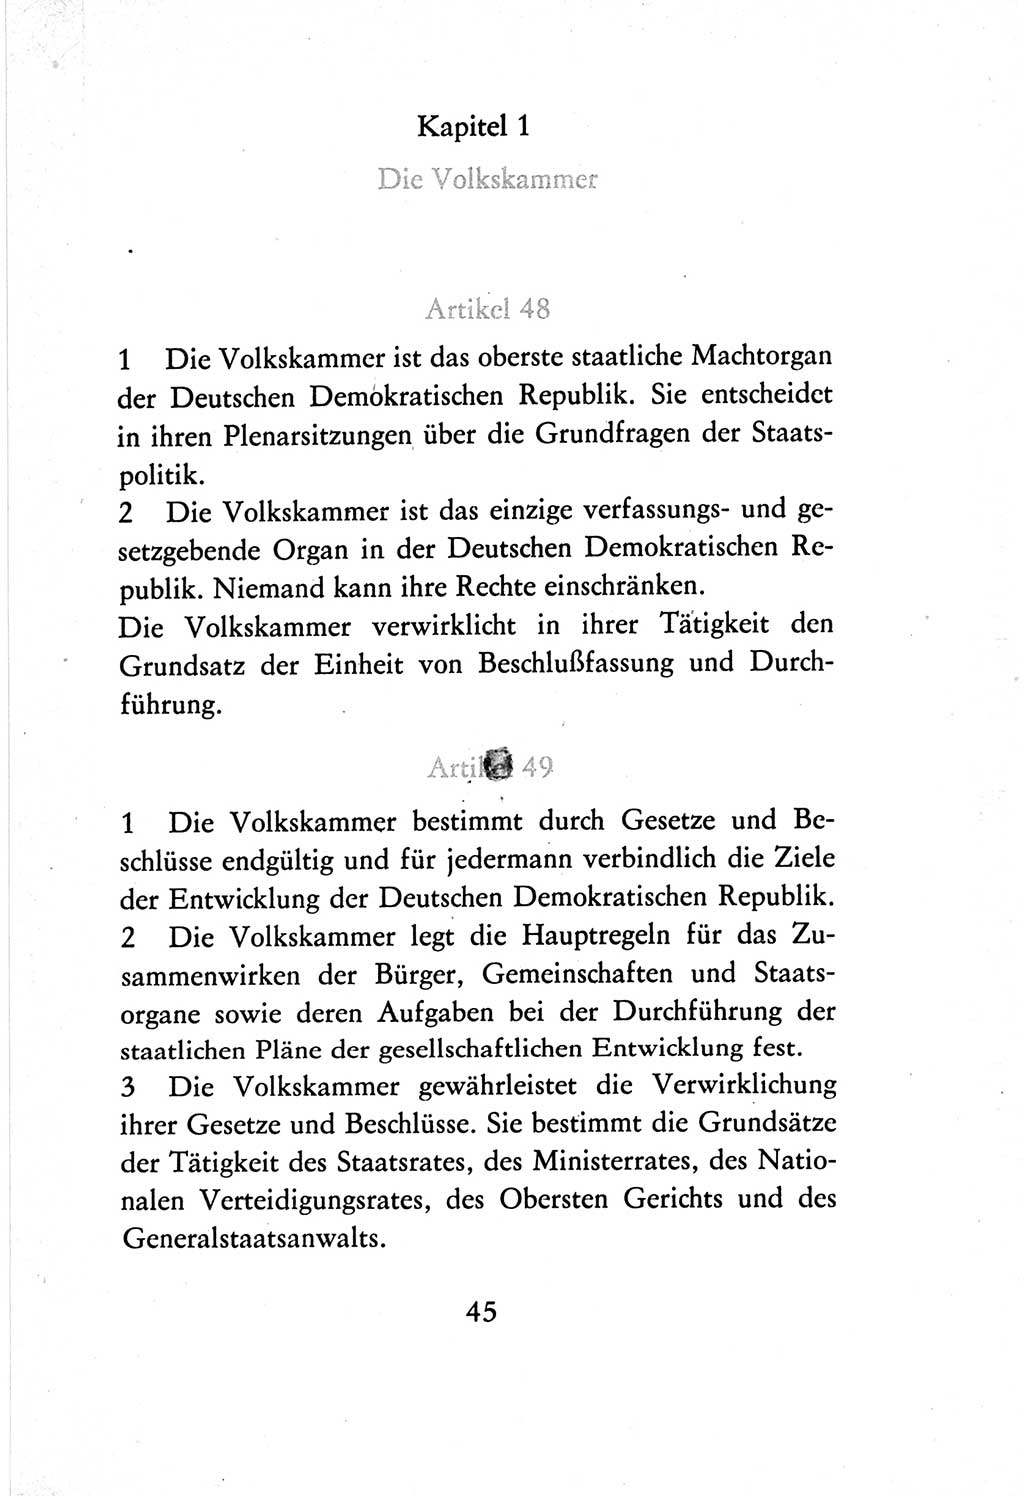 Verfassung der Deutschen Demokratischen Republik (DDR) vom 7. Oktober 1974, Seite 45 (Verf. DDR 1974, S. 45)